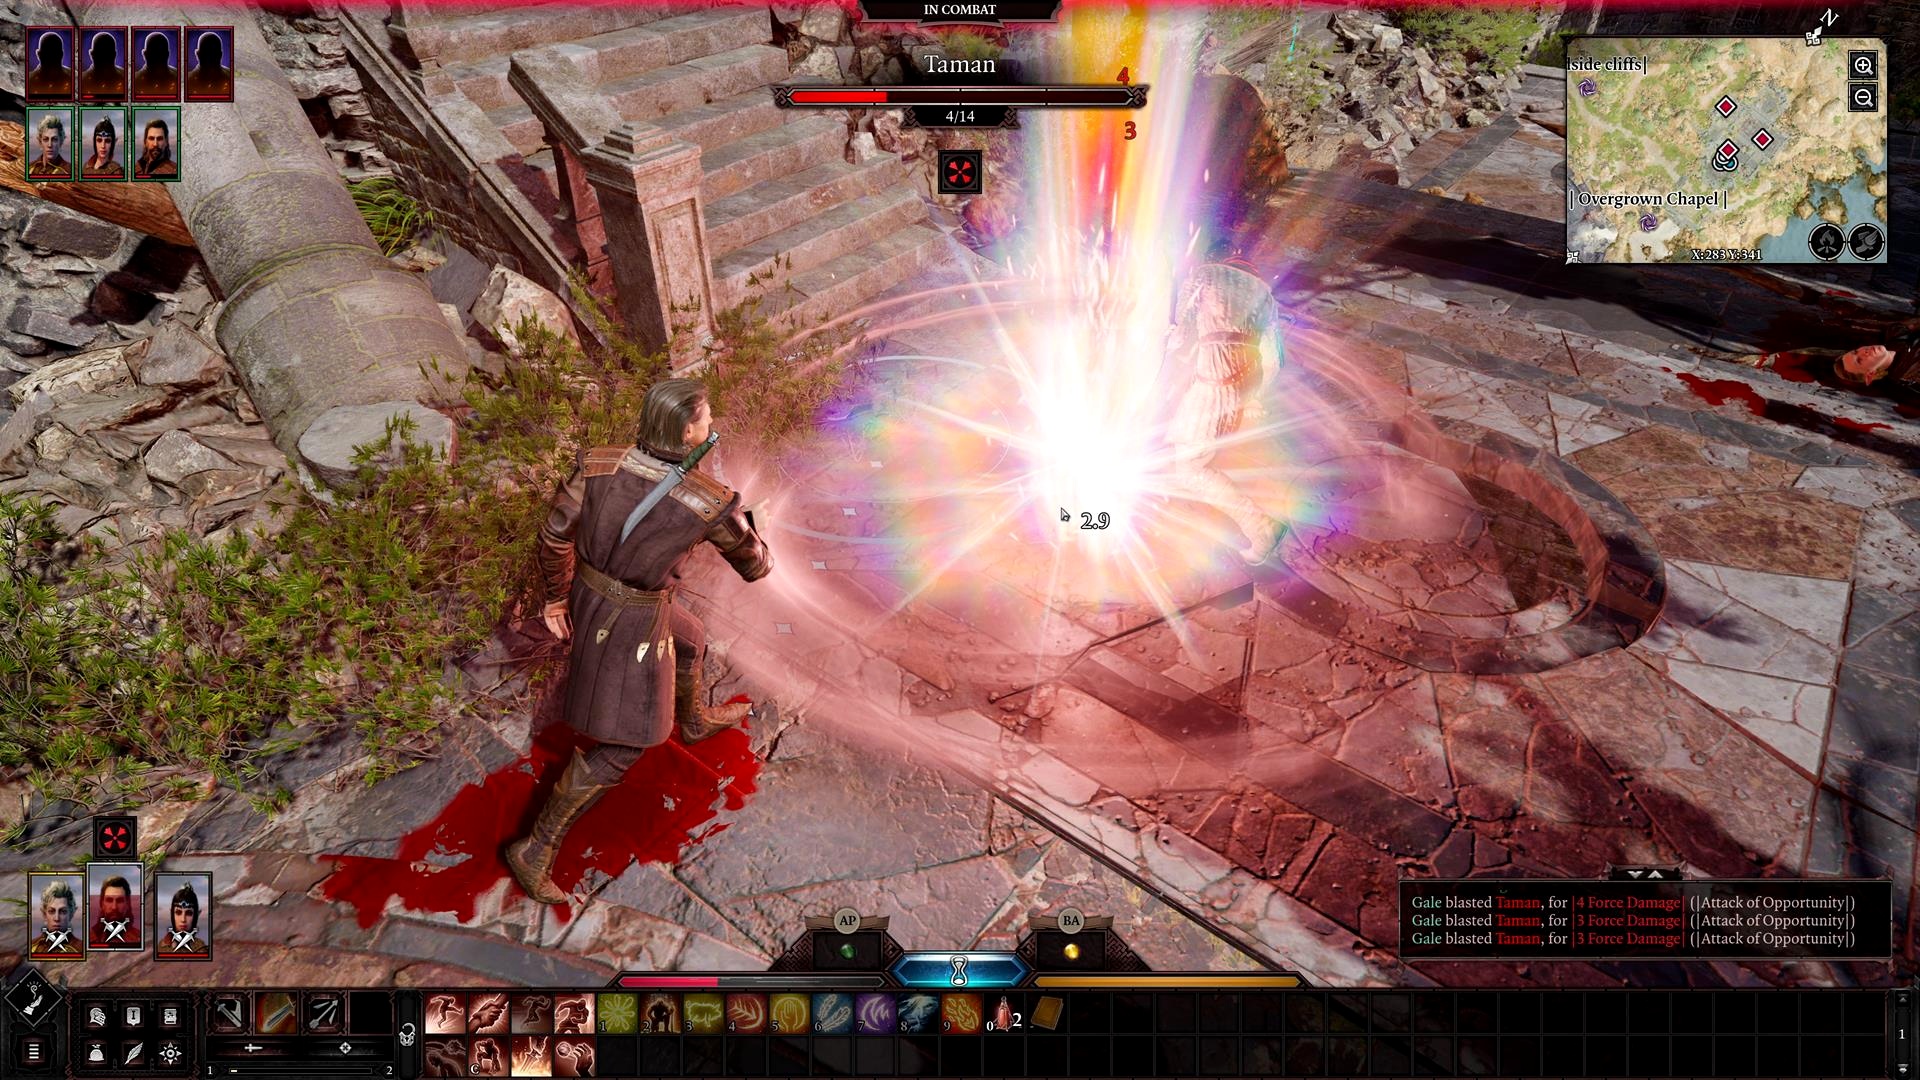 Часть скриншотов Baldur's Gate 3. утекла. еще перед демонстрацией игры